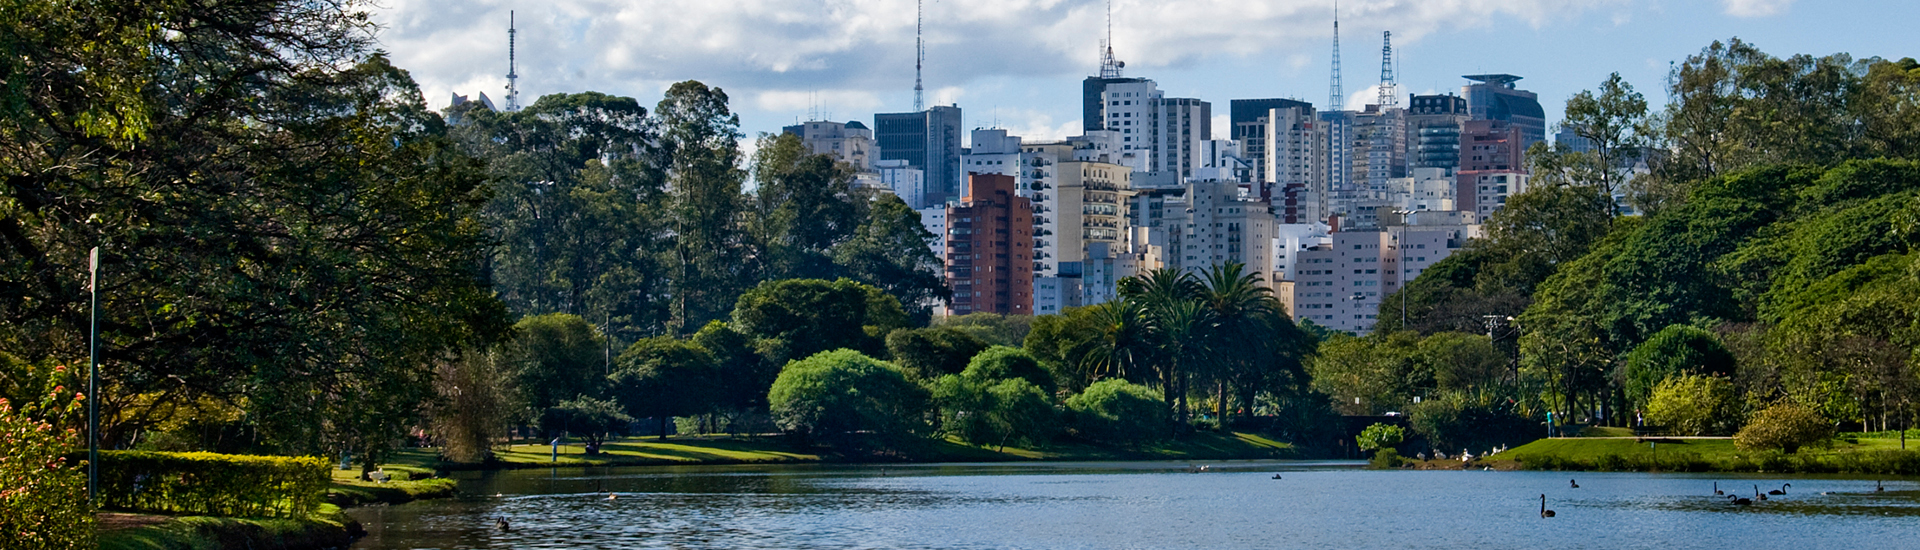 Paisagem da cidade de São Paulo, com lago, árvores e vários prédios ao fundo.